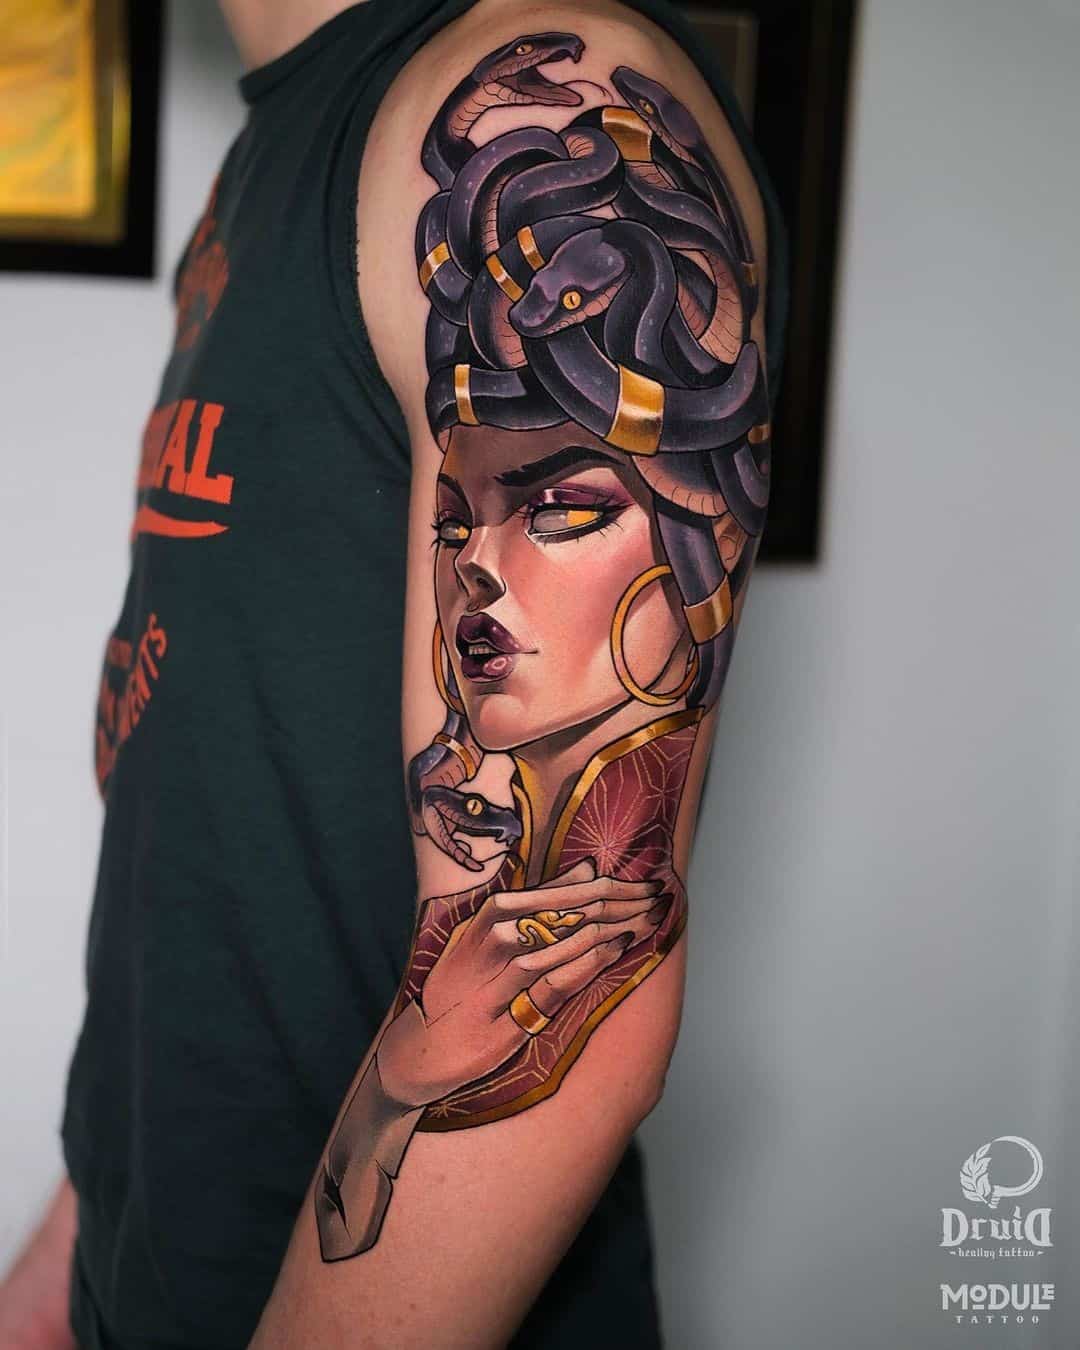 The Medusa Tattoo